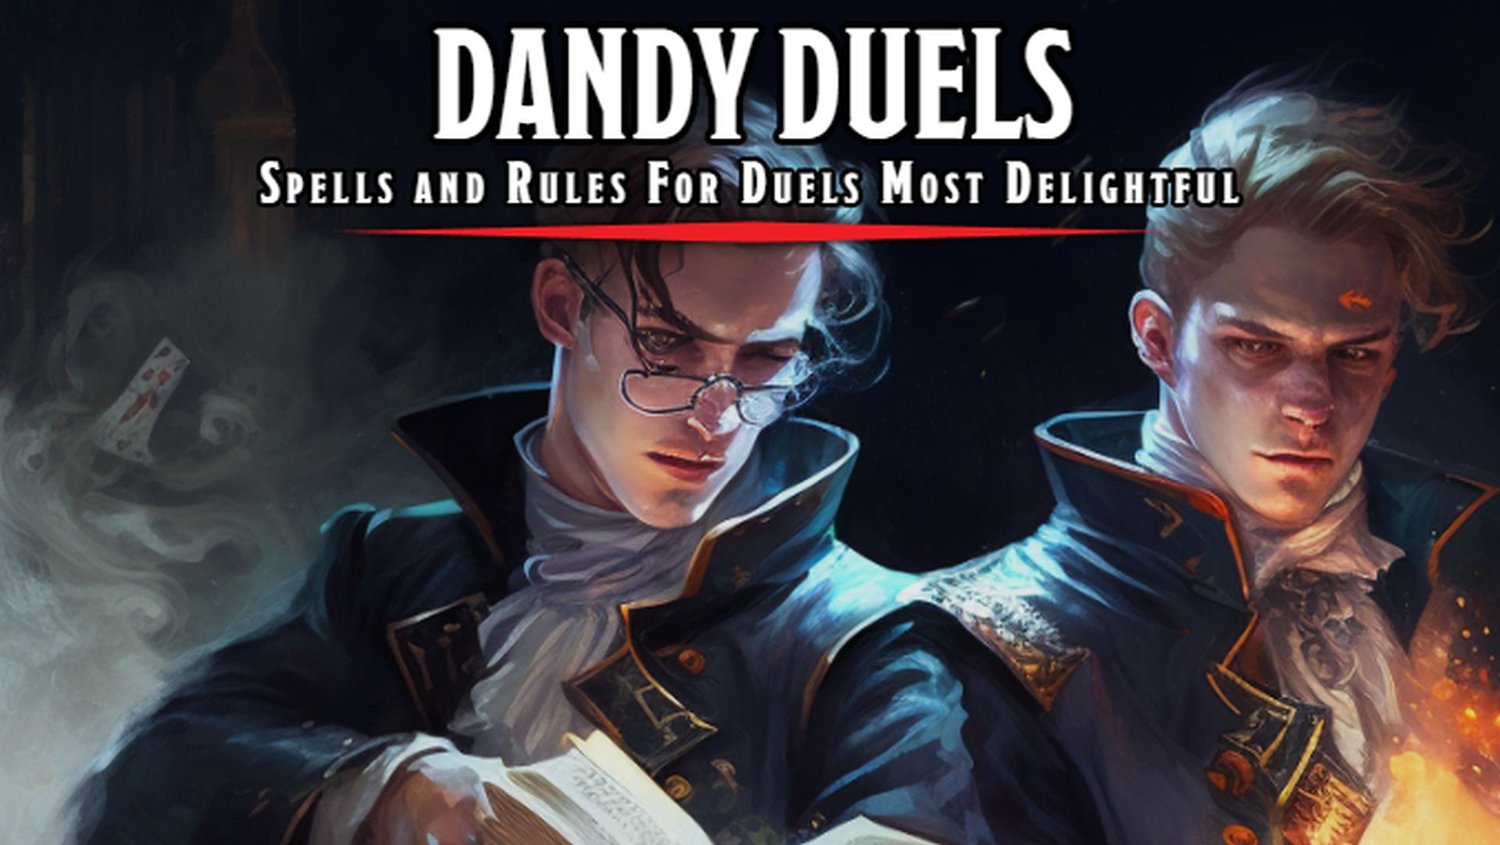 Profitez de sorts non létaux pour les duels D&D dans DANDY DUELS